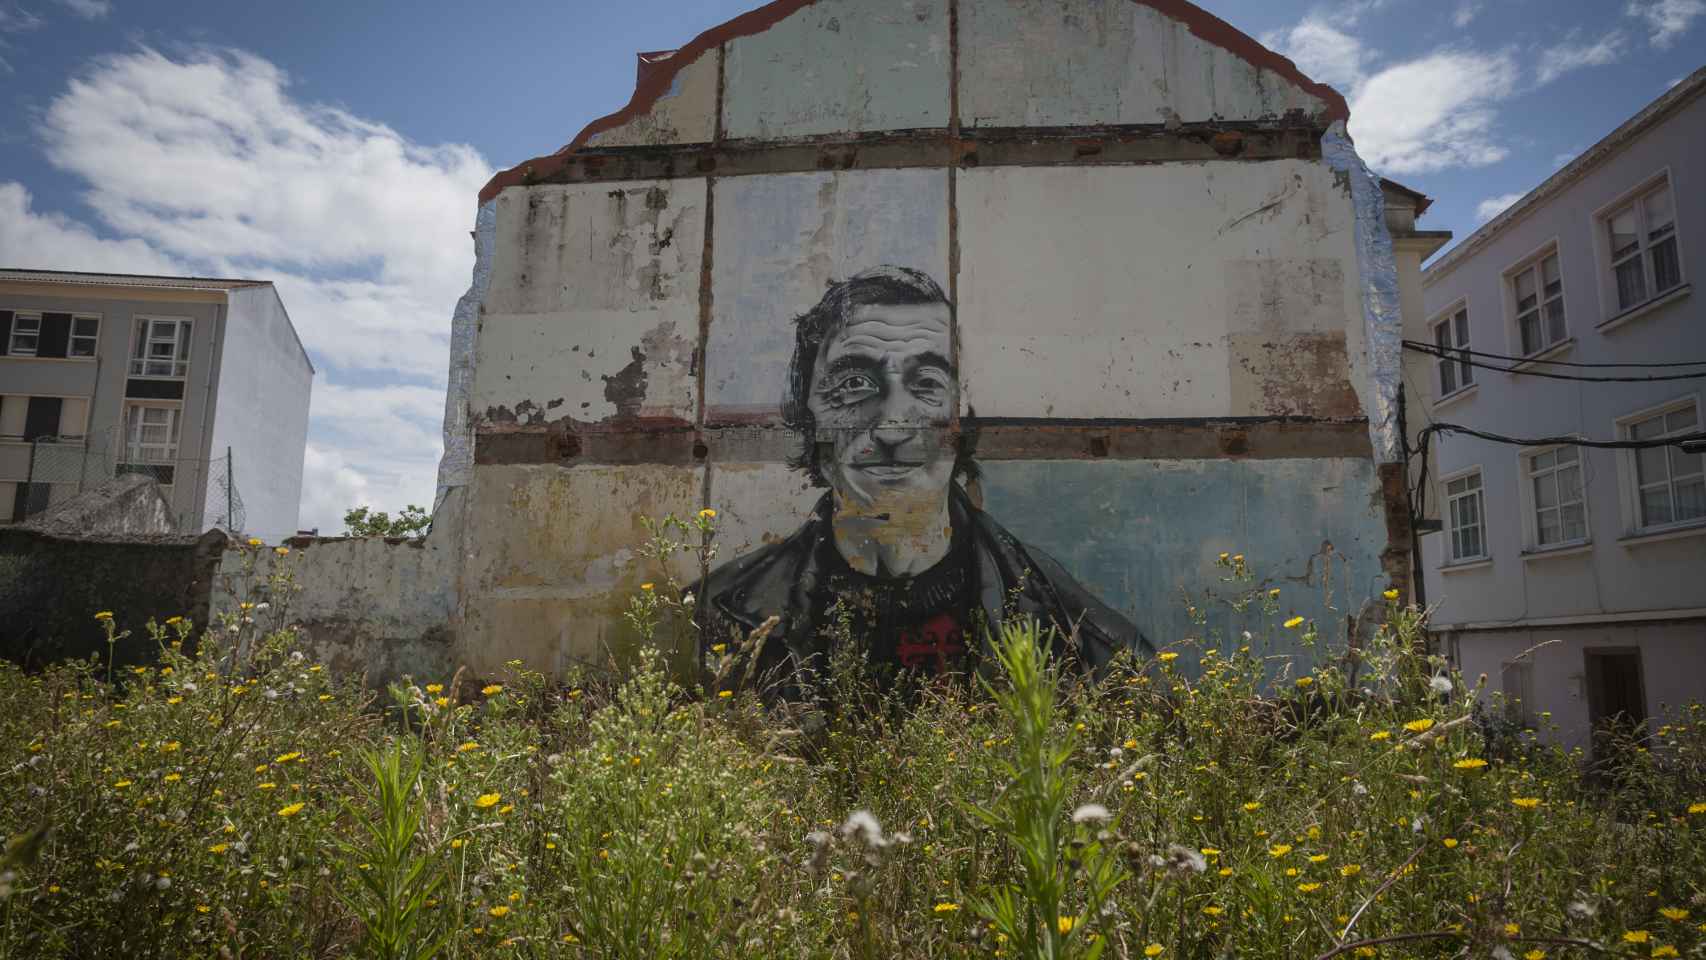 En el barrio de Canido, las ilustraciones cubren las casas abandonadas.